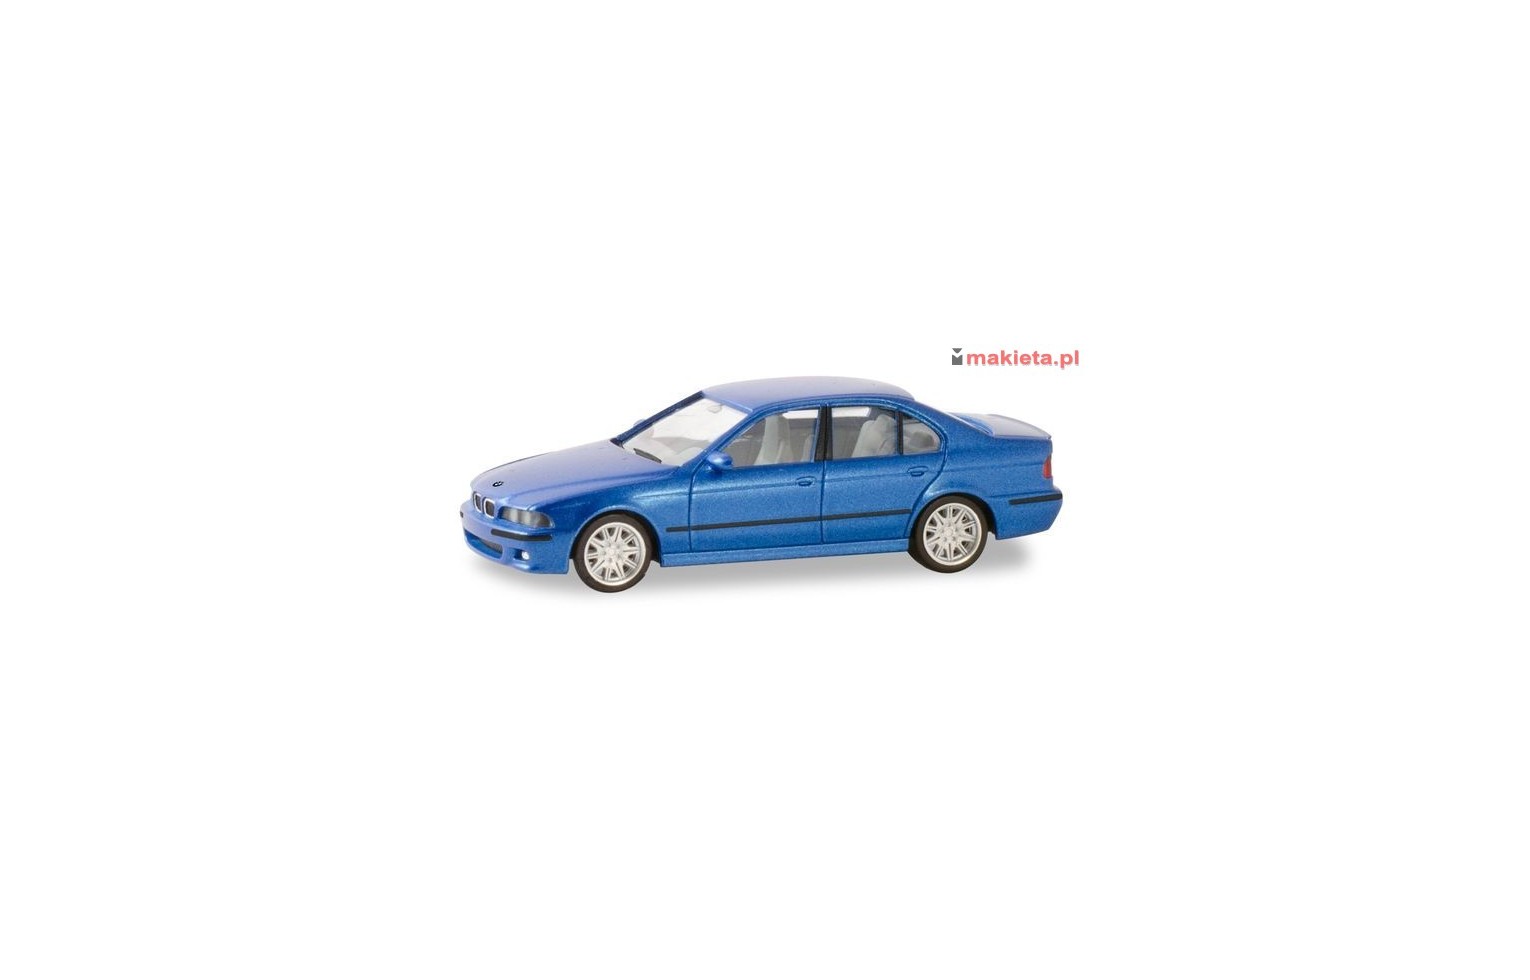 Herpa 032643 -002, BMW M5, Montecarlo blue metallic., skala H0.